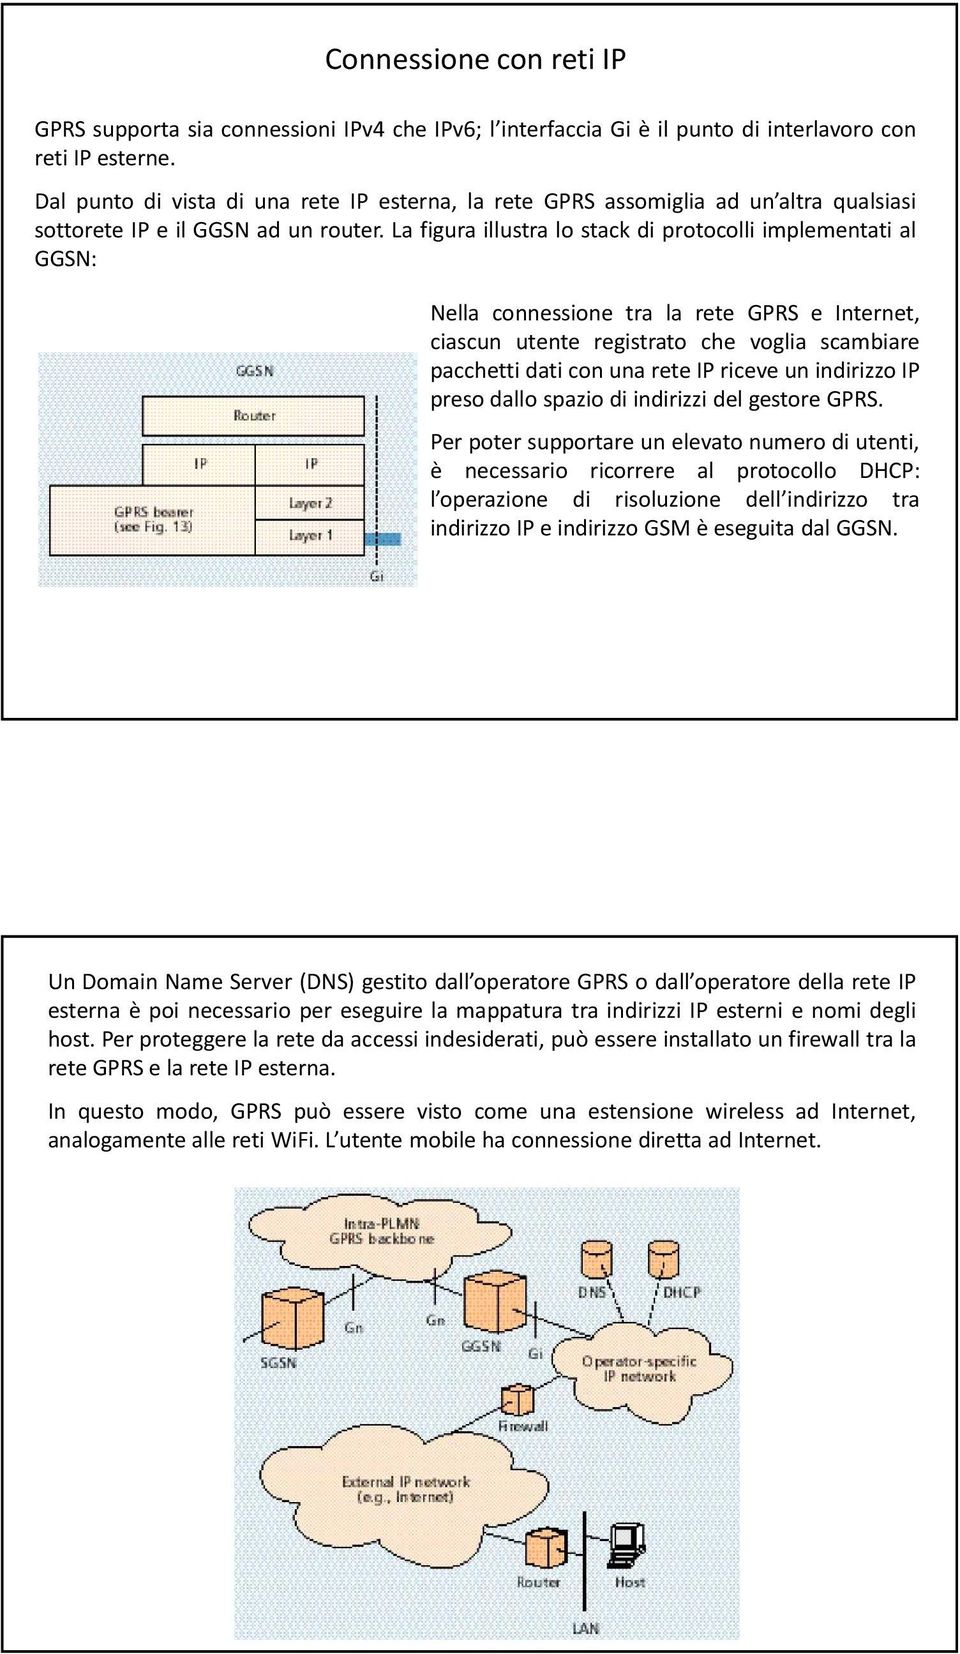 La figura illustra lo stack di protocolli implementati al GGSN: Nella connessione tra la rete GPRS e Internet, ciascun utente registrato che voglia scambiare